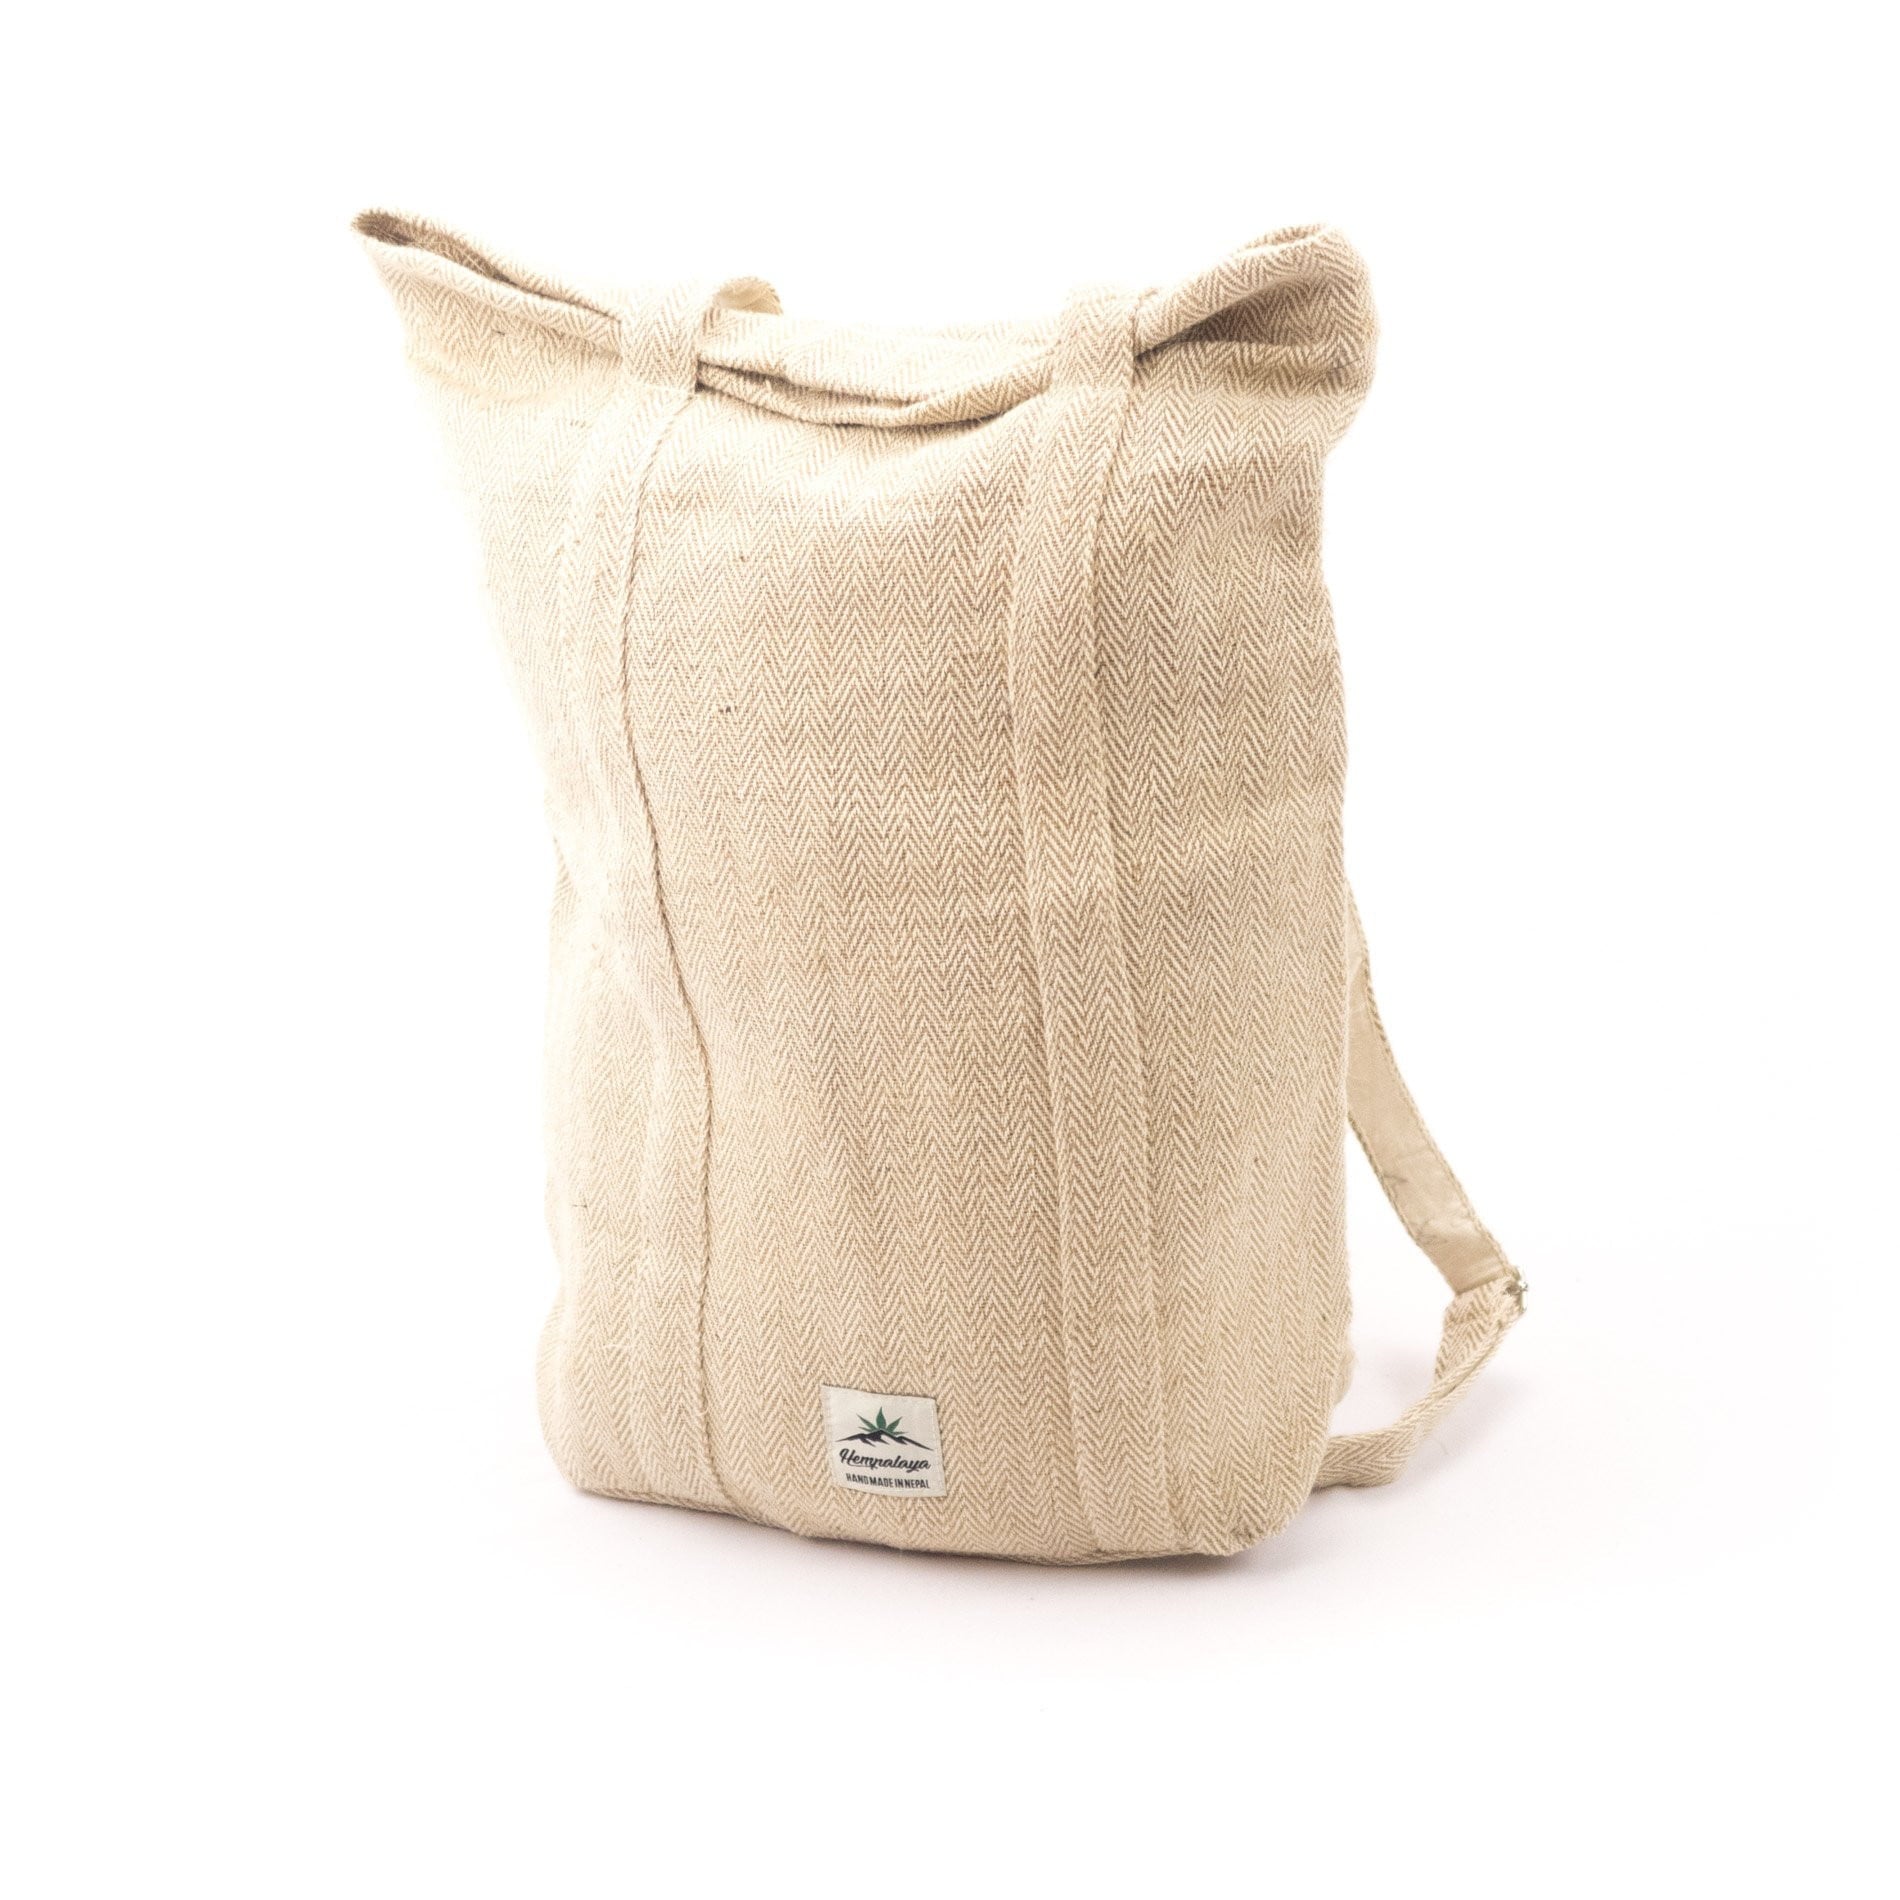 Hemp 2 in 1, multipurpose bag and backpack, natural - Hempalaya